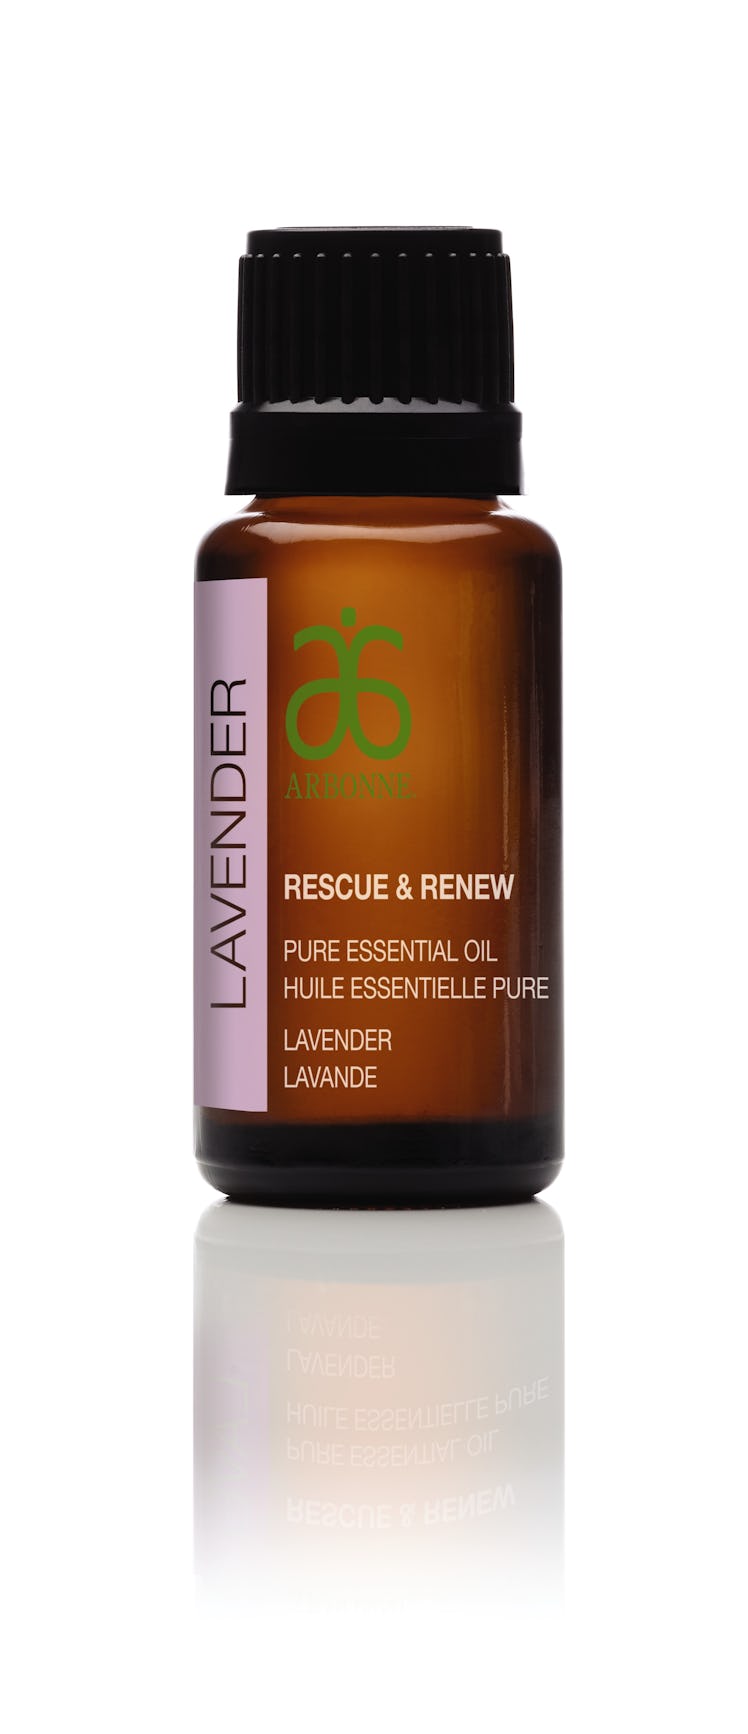 Lavender Rescue & Renew pure essential oil bottle